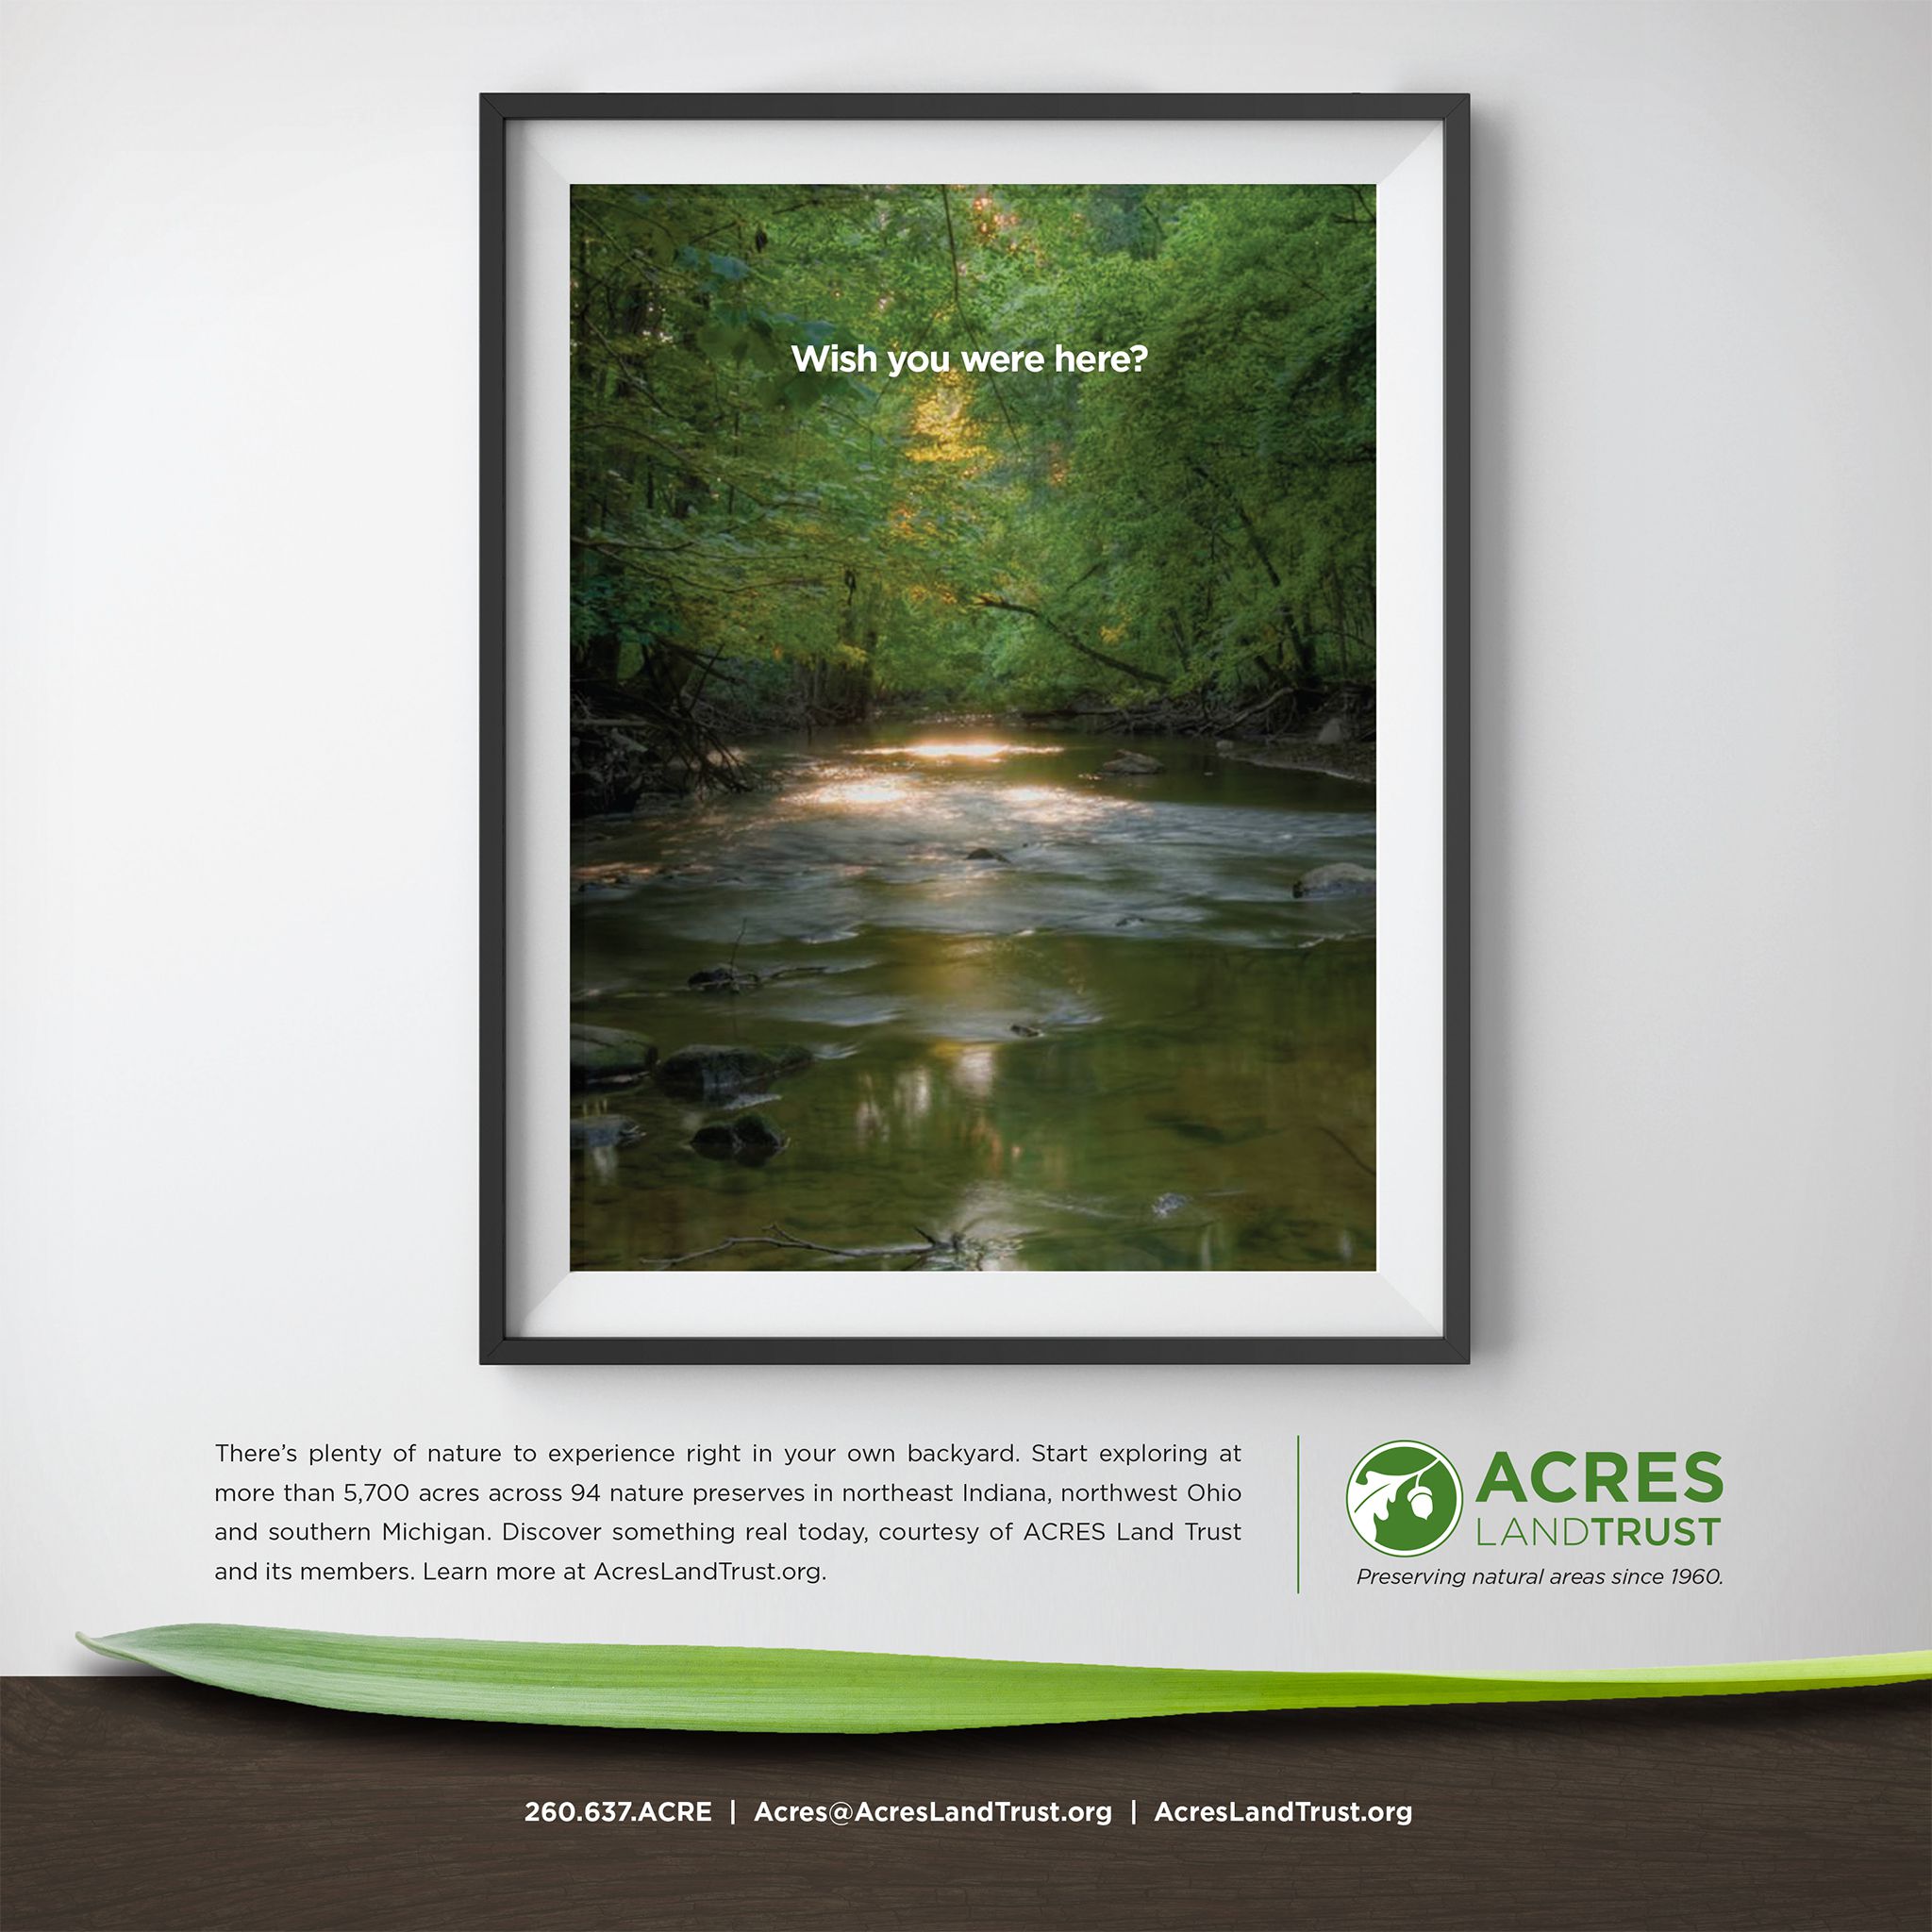 Acres Land Trust Print Ad